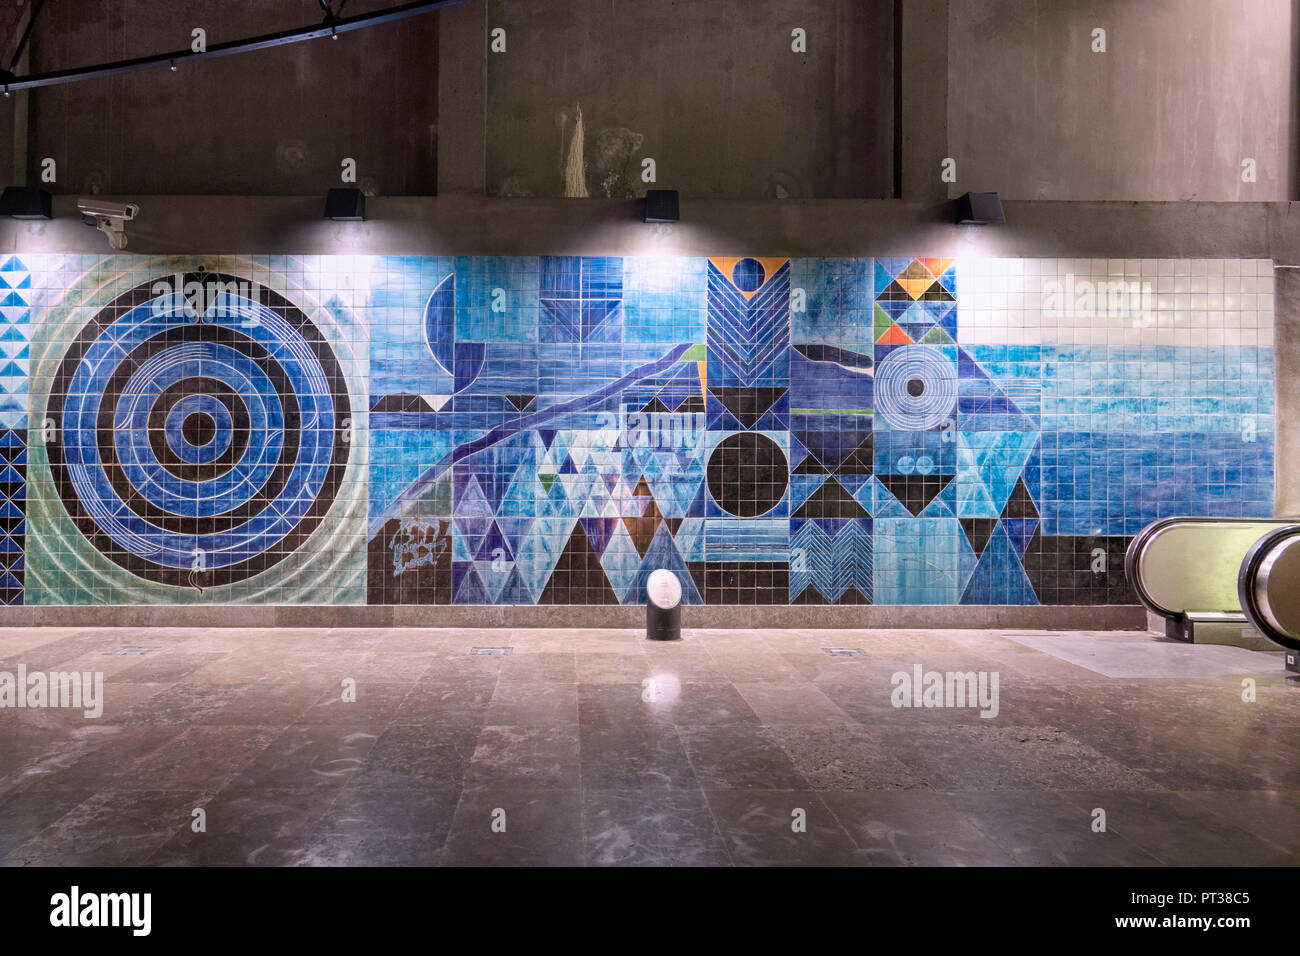 Il Portogallo, Lisbona, Lisbona Estação do Oriente, artistico progettato parete piastrellata nella stazione della metropolitana Foto Stock